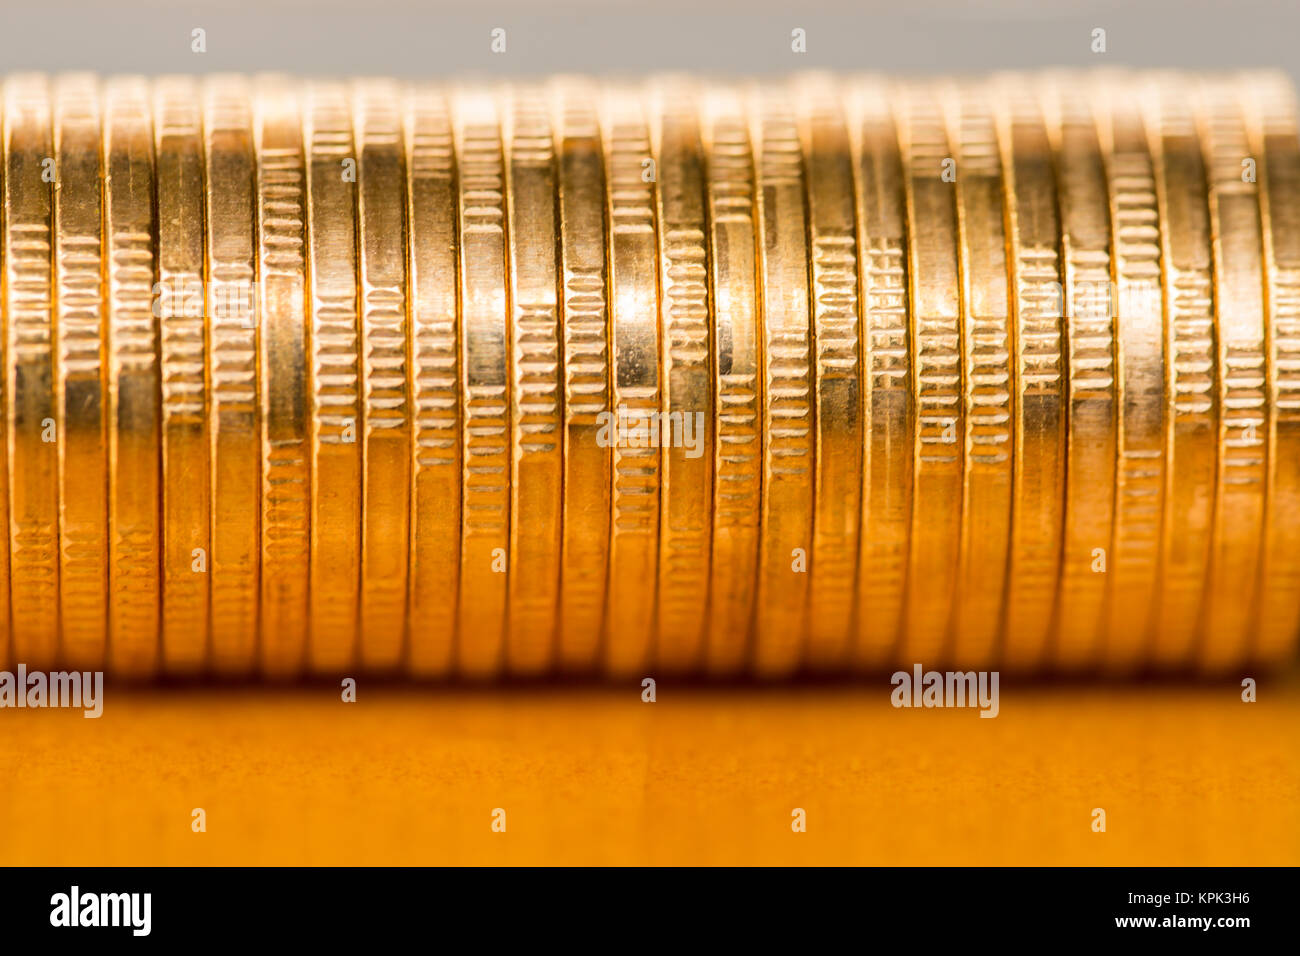 Pila de monedas de oro Foto de stock